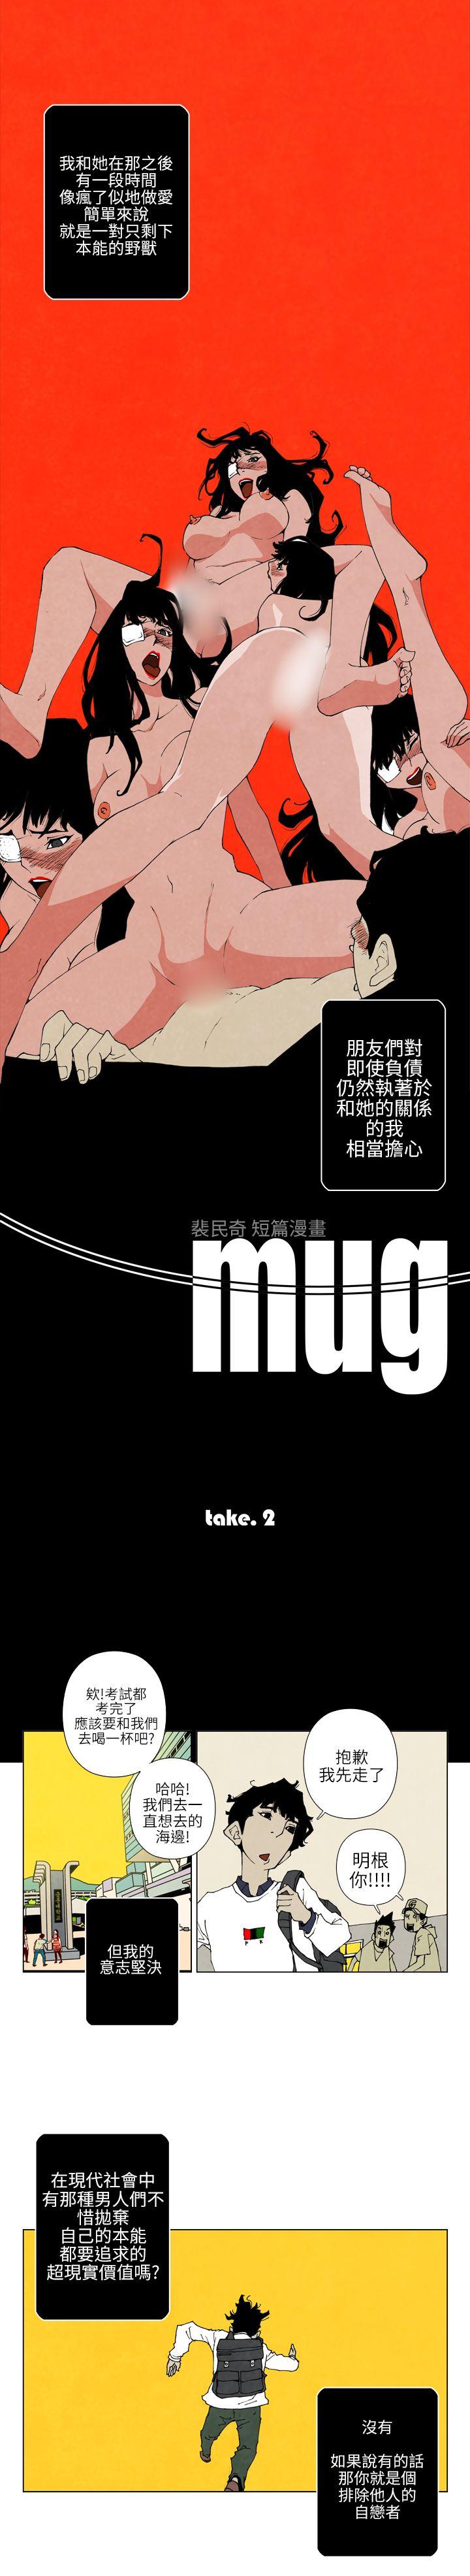 裴民奇 - mug(下)